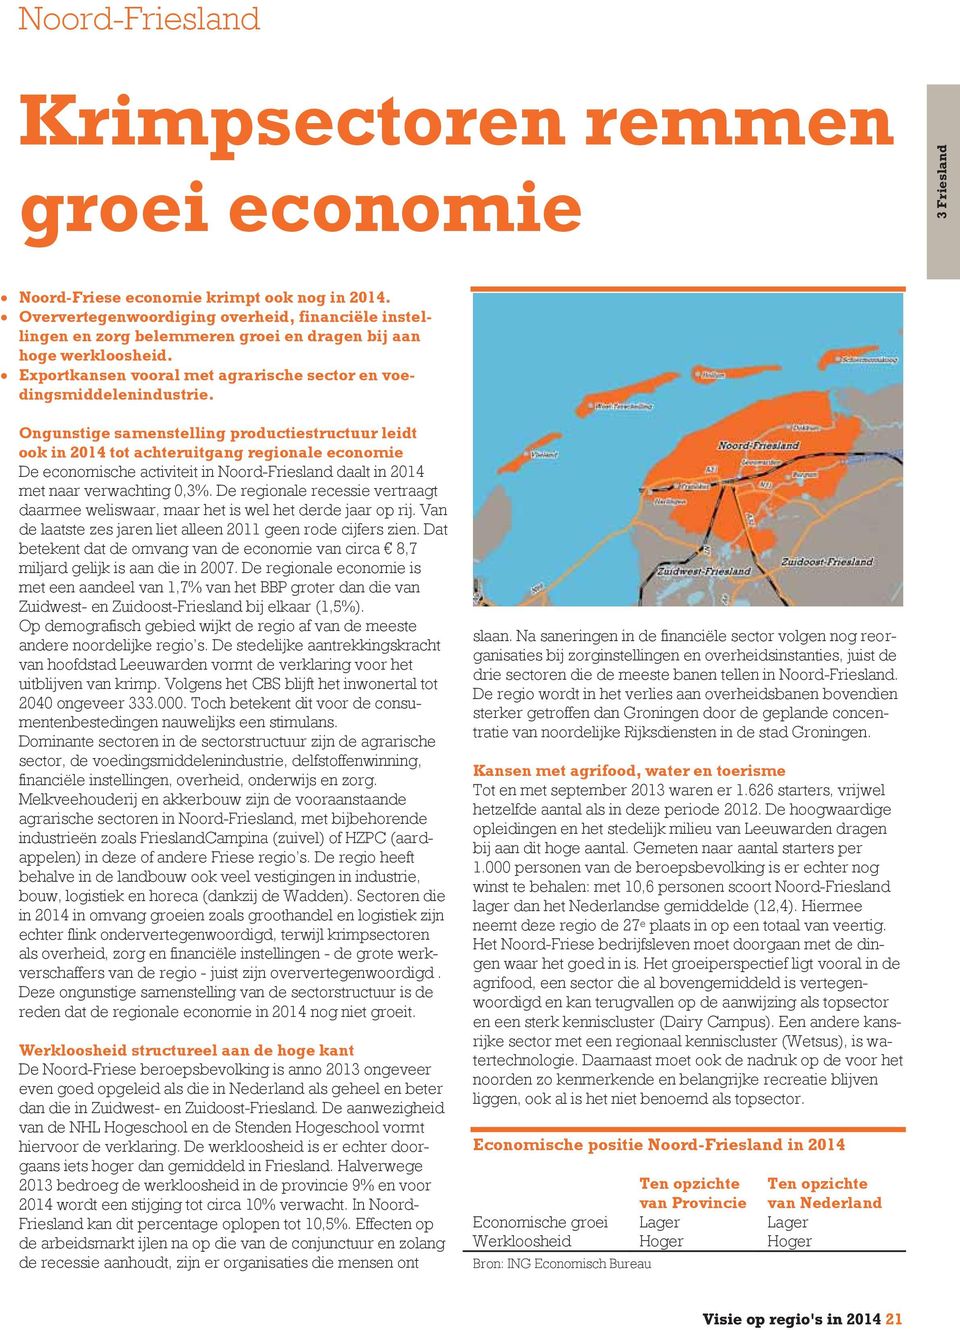 Ongunstige samenstelling productiestructuur leidt ook in 2014 tot achteruitgang regionale economie De economische activiteit in Noord-Friesland daalt in 2014 met naar verwachting 0,3%.